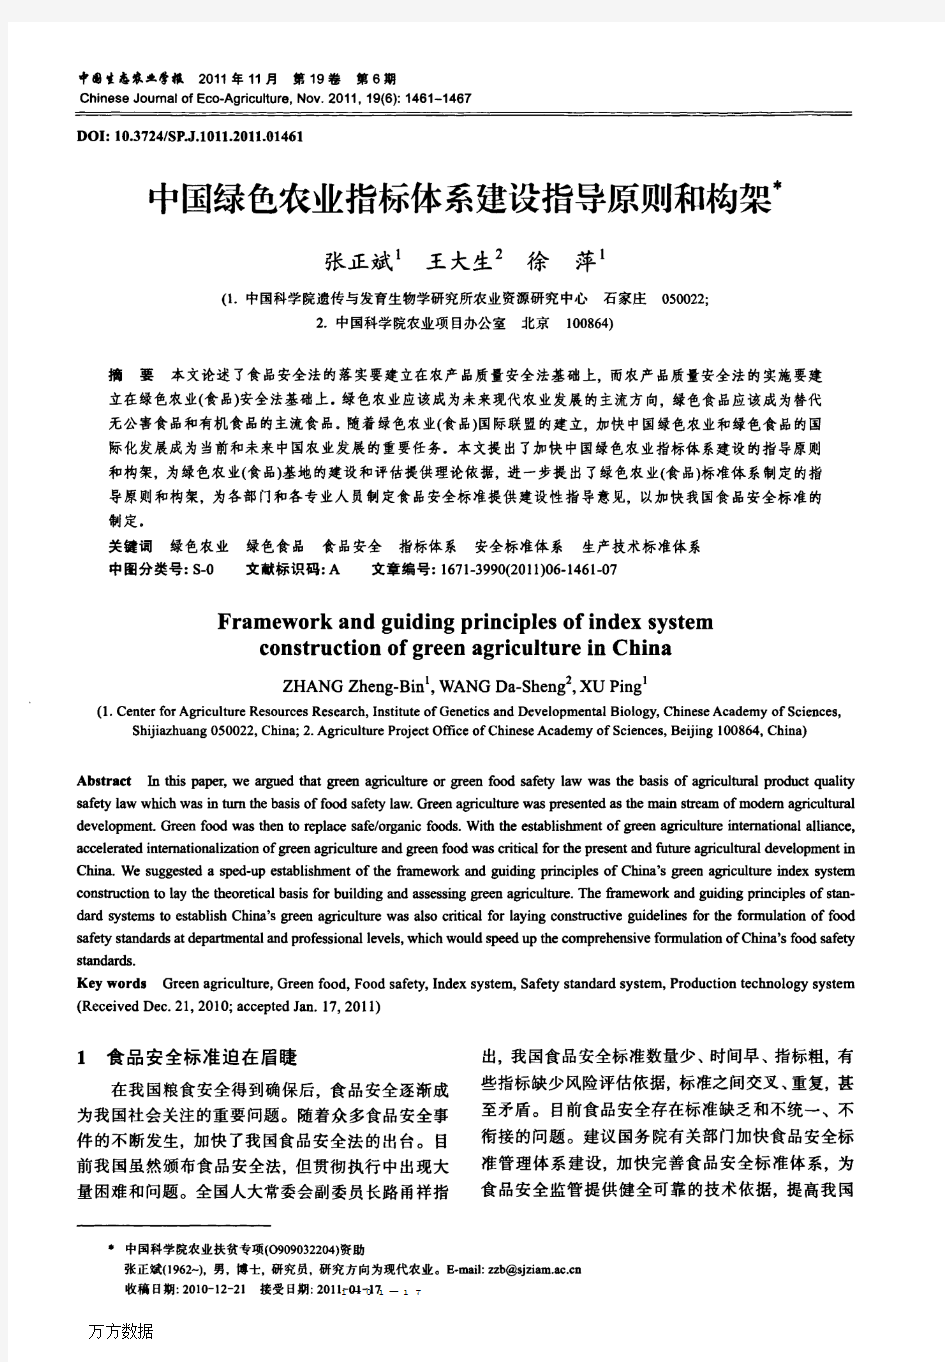 中国绿色农业指标体系建设指导原则和构架